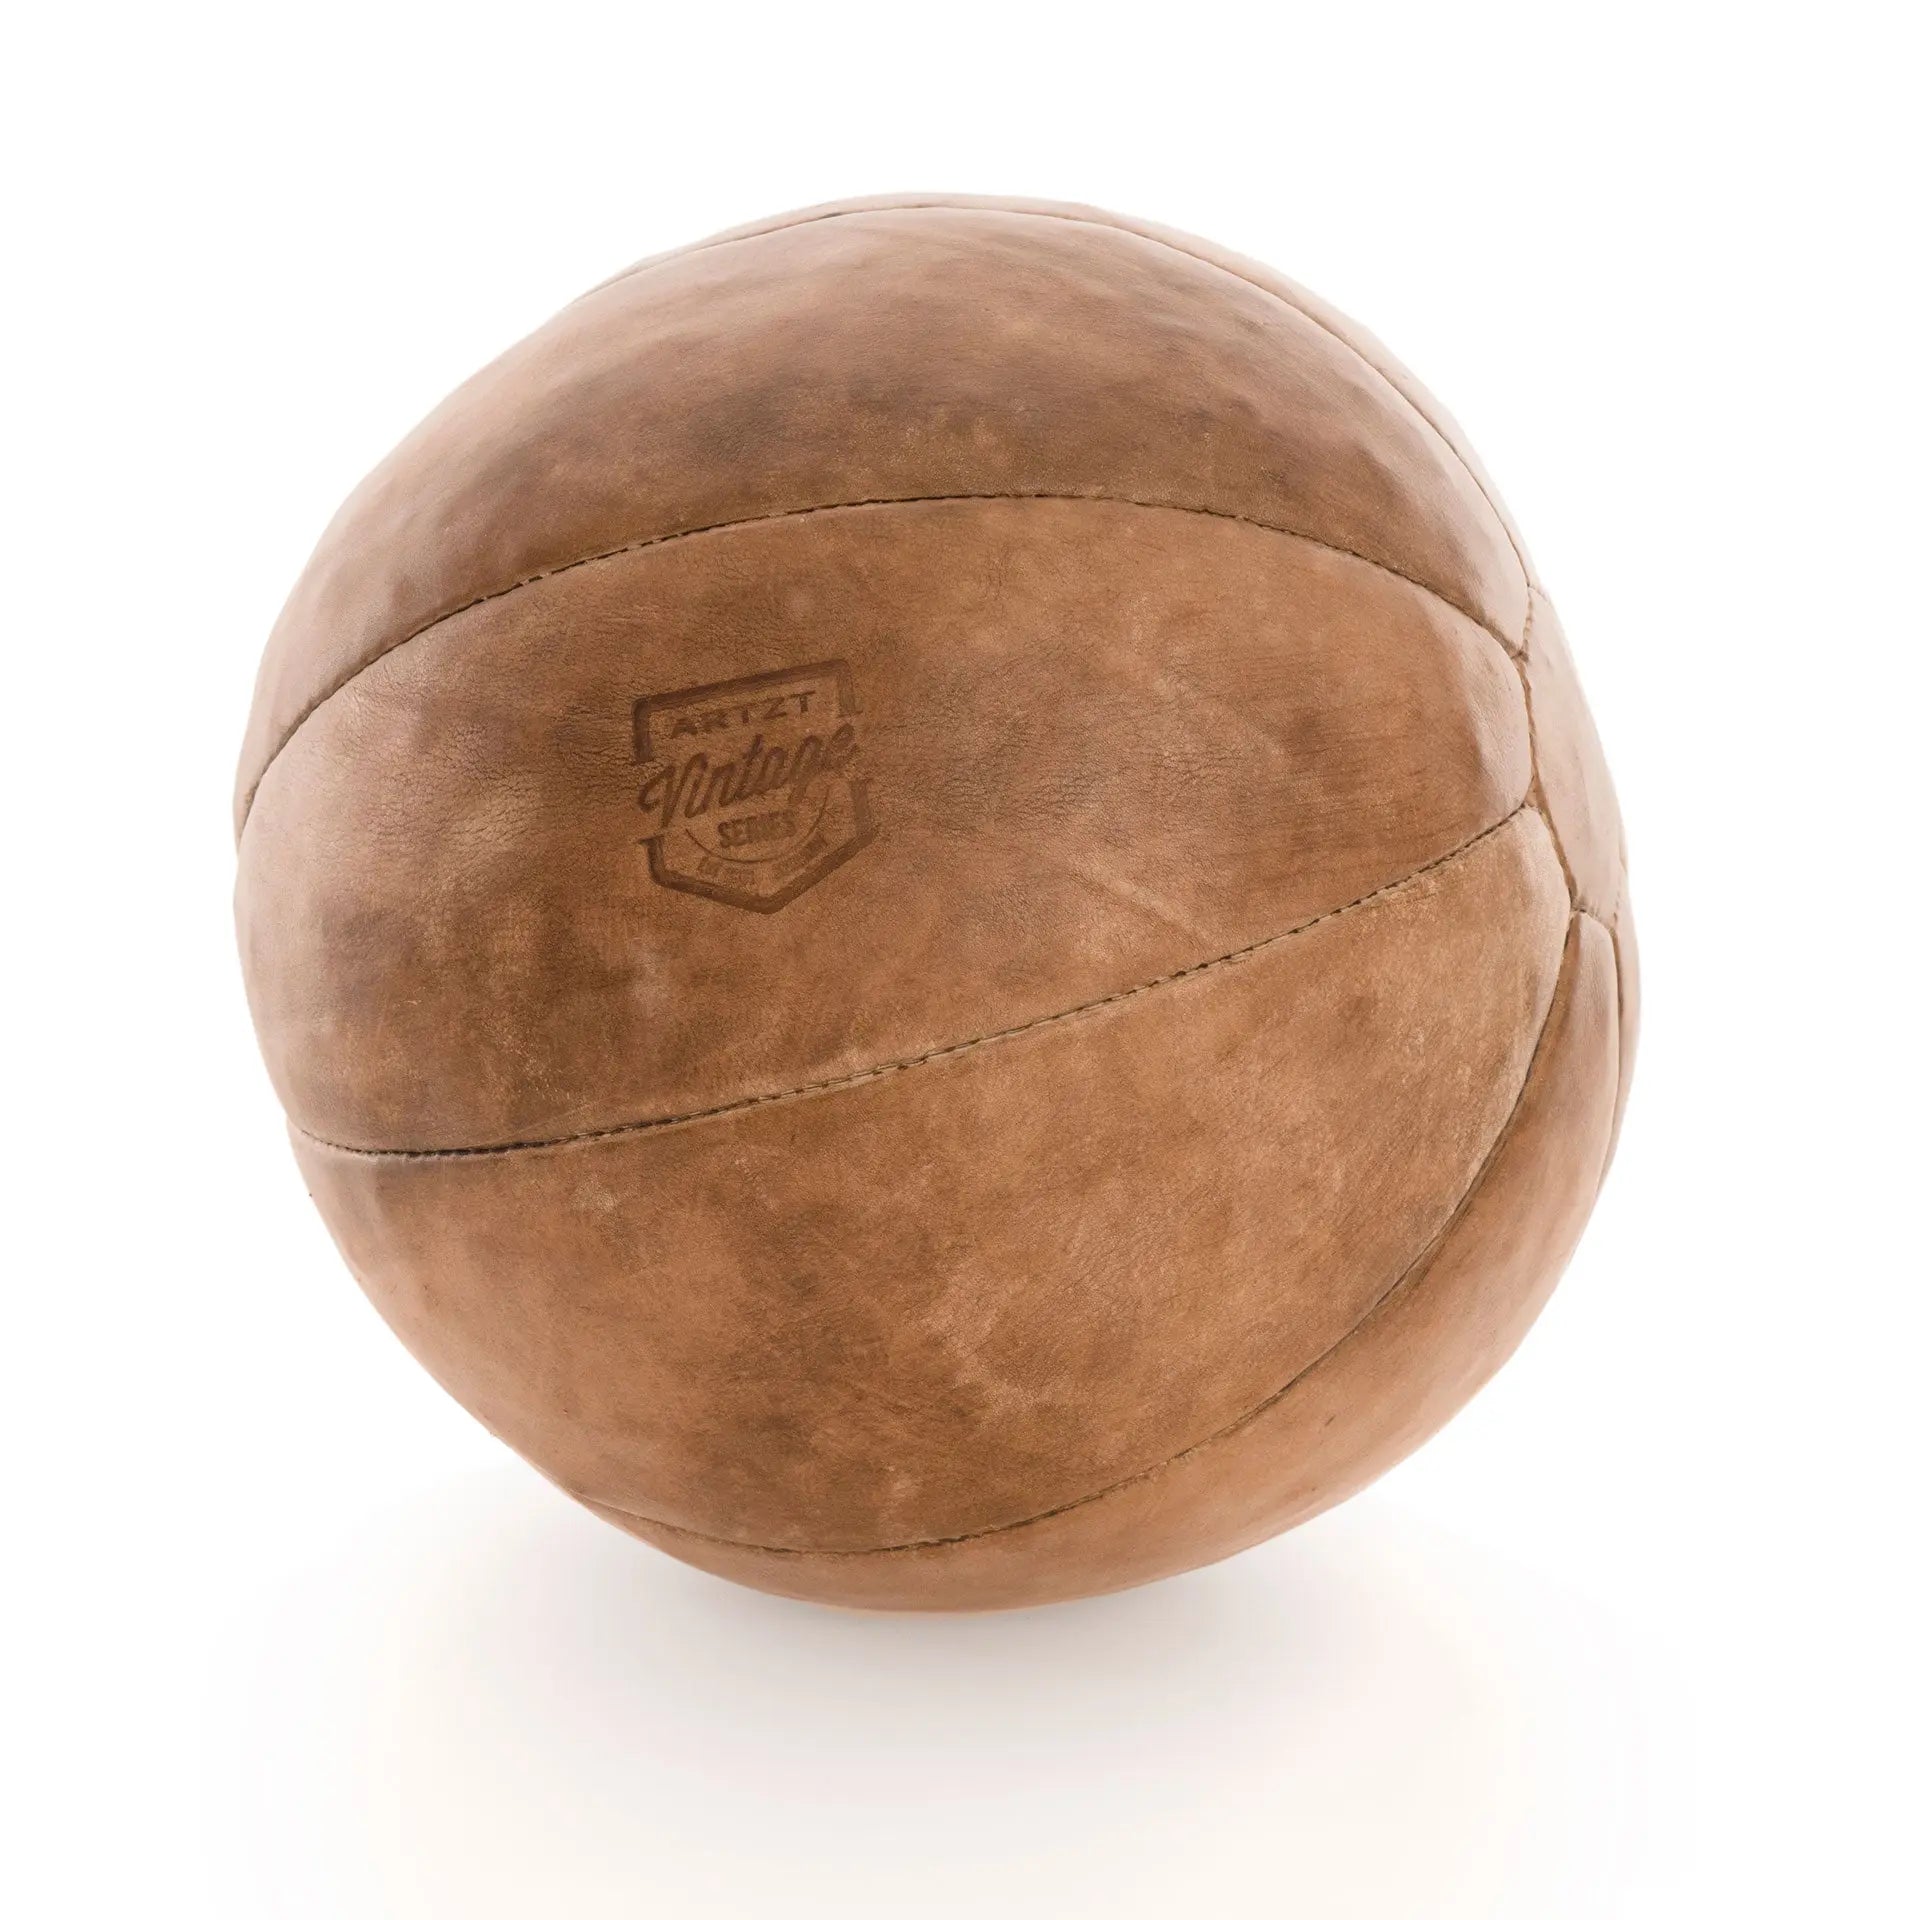 Medizinball Medizinball ARTZT Vintage Series 4 kg  